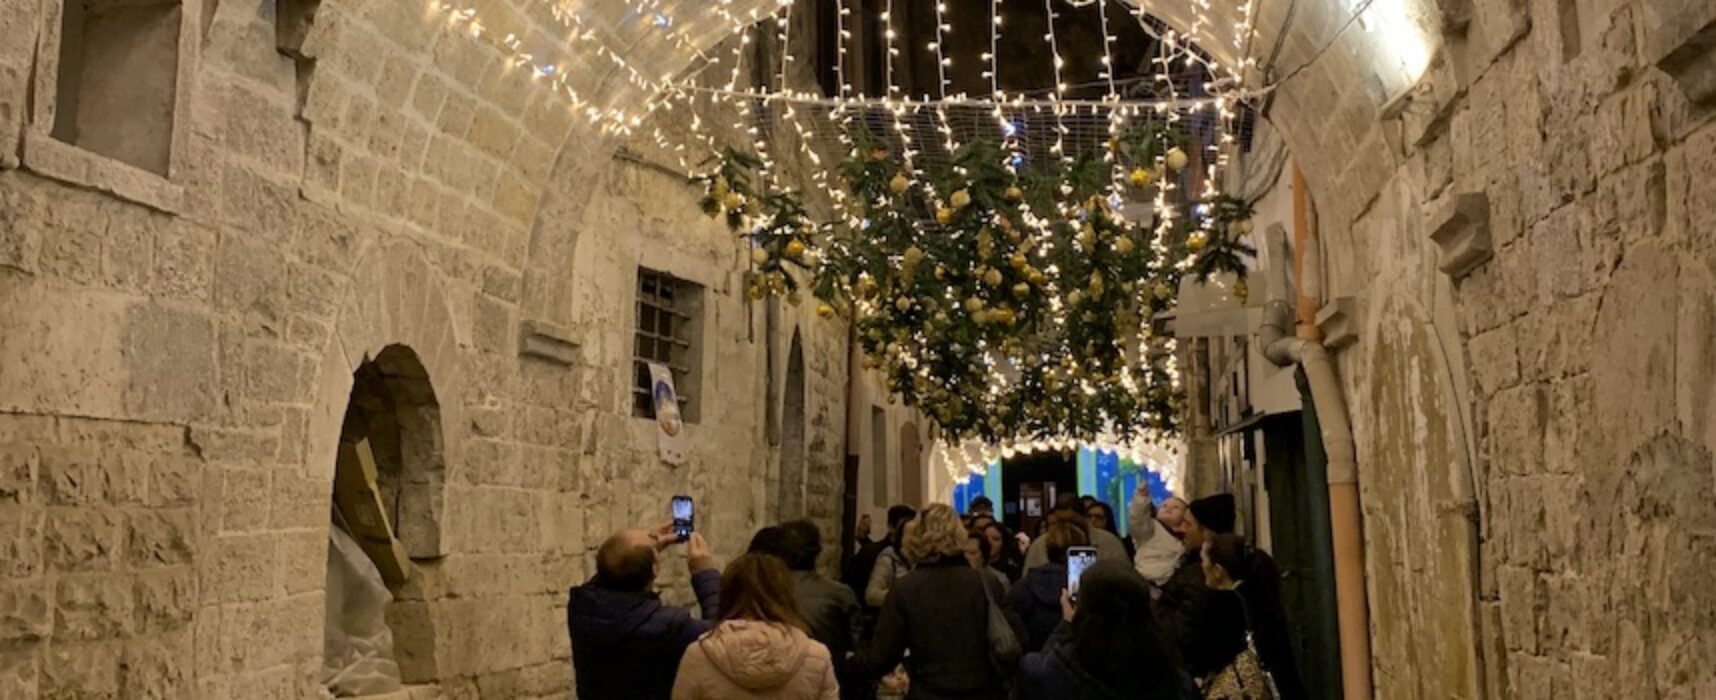 Natale, Associazione Borgo Antico: “Non buttate i vecchi addobbi, abbelliamo il centro storico”